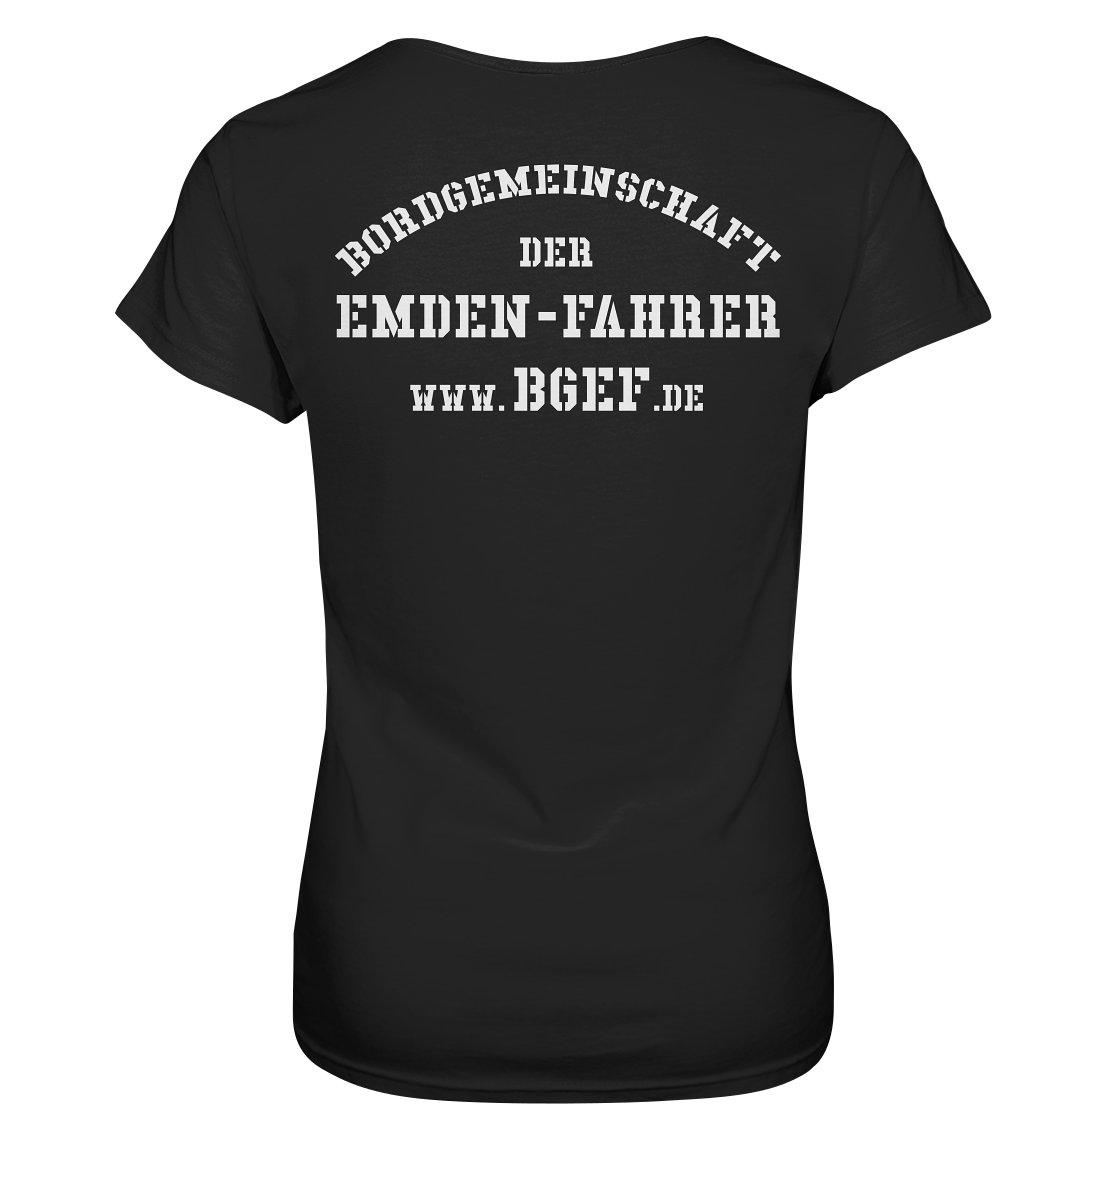 Bordgemeinschaft der Emdenfahrer - Unterschätze niemals die Frau... - Ladies Premium Shirt